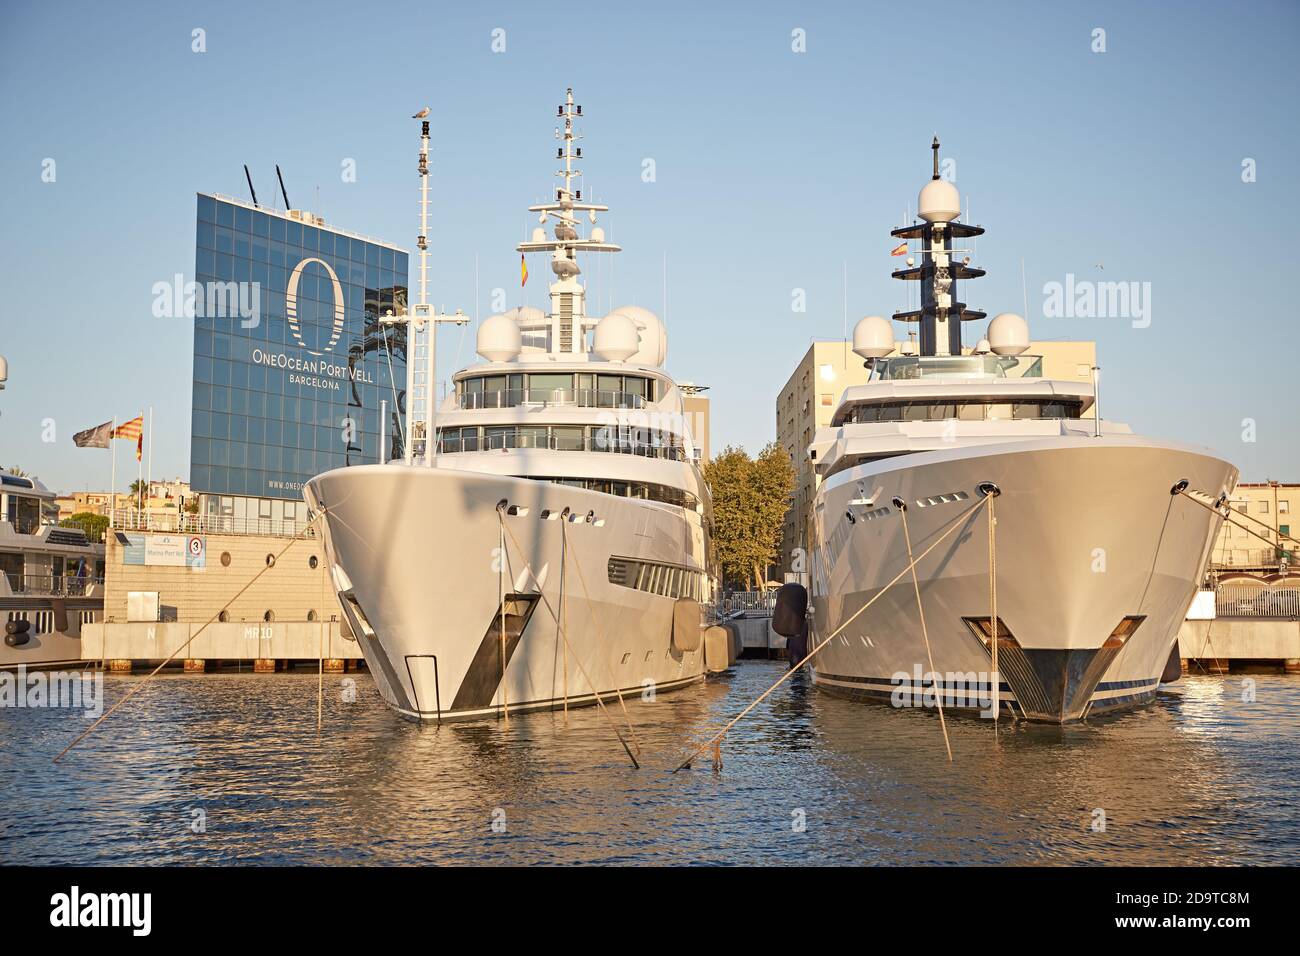 Barcelone, Espagne, septembre 2019. Yachts de luxe amarrés dans le port de Barceloneta avec les bâtiments de la ville en arrière-plan. Banque D'Images